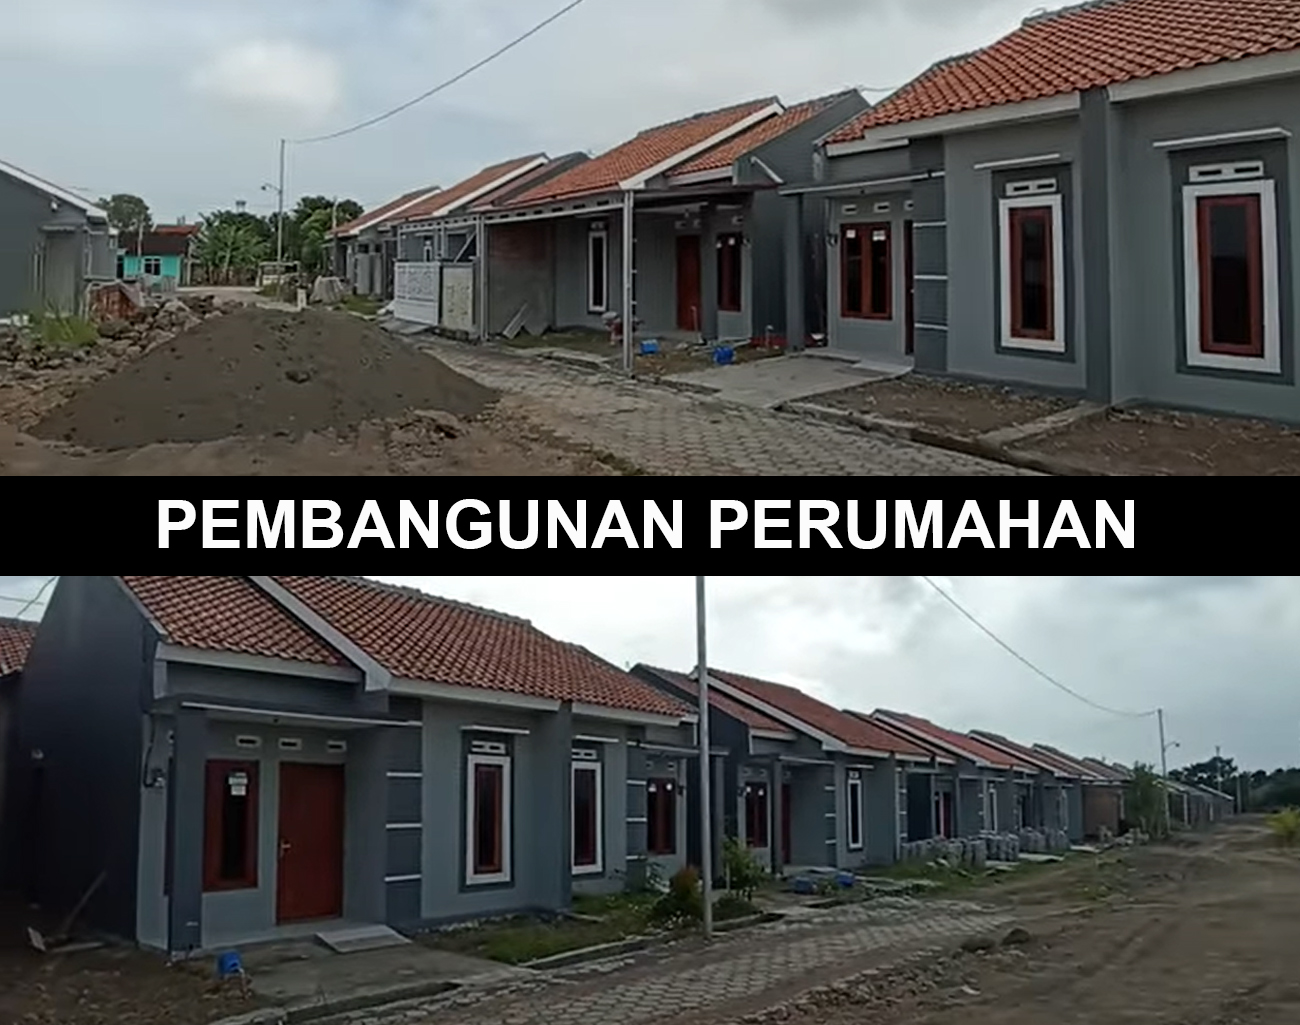 Pembangunan Perumahan Menjamur di Tanjung Payang, Inilah Kata Kepala Desa Sapri